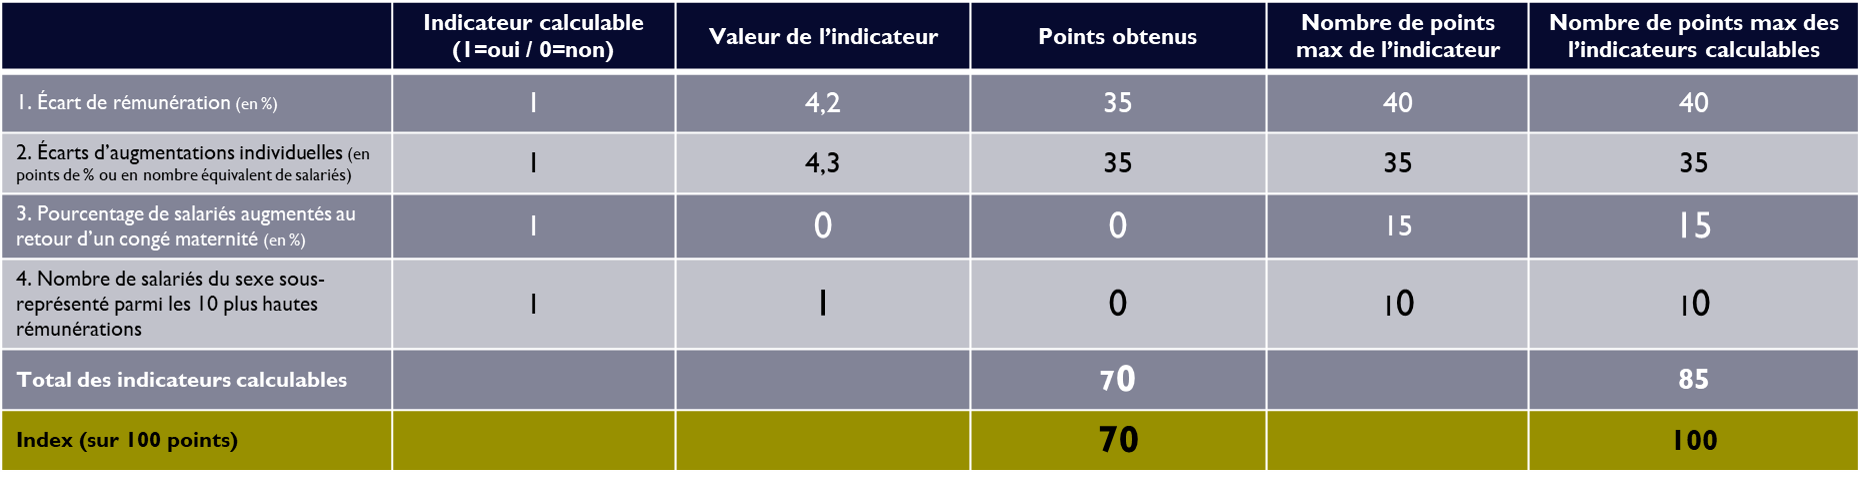 Index égalité Homme Femme Valence = 70 points / 100